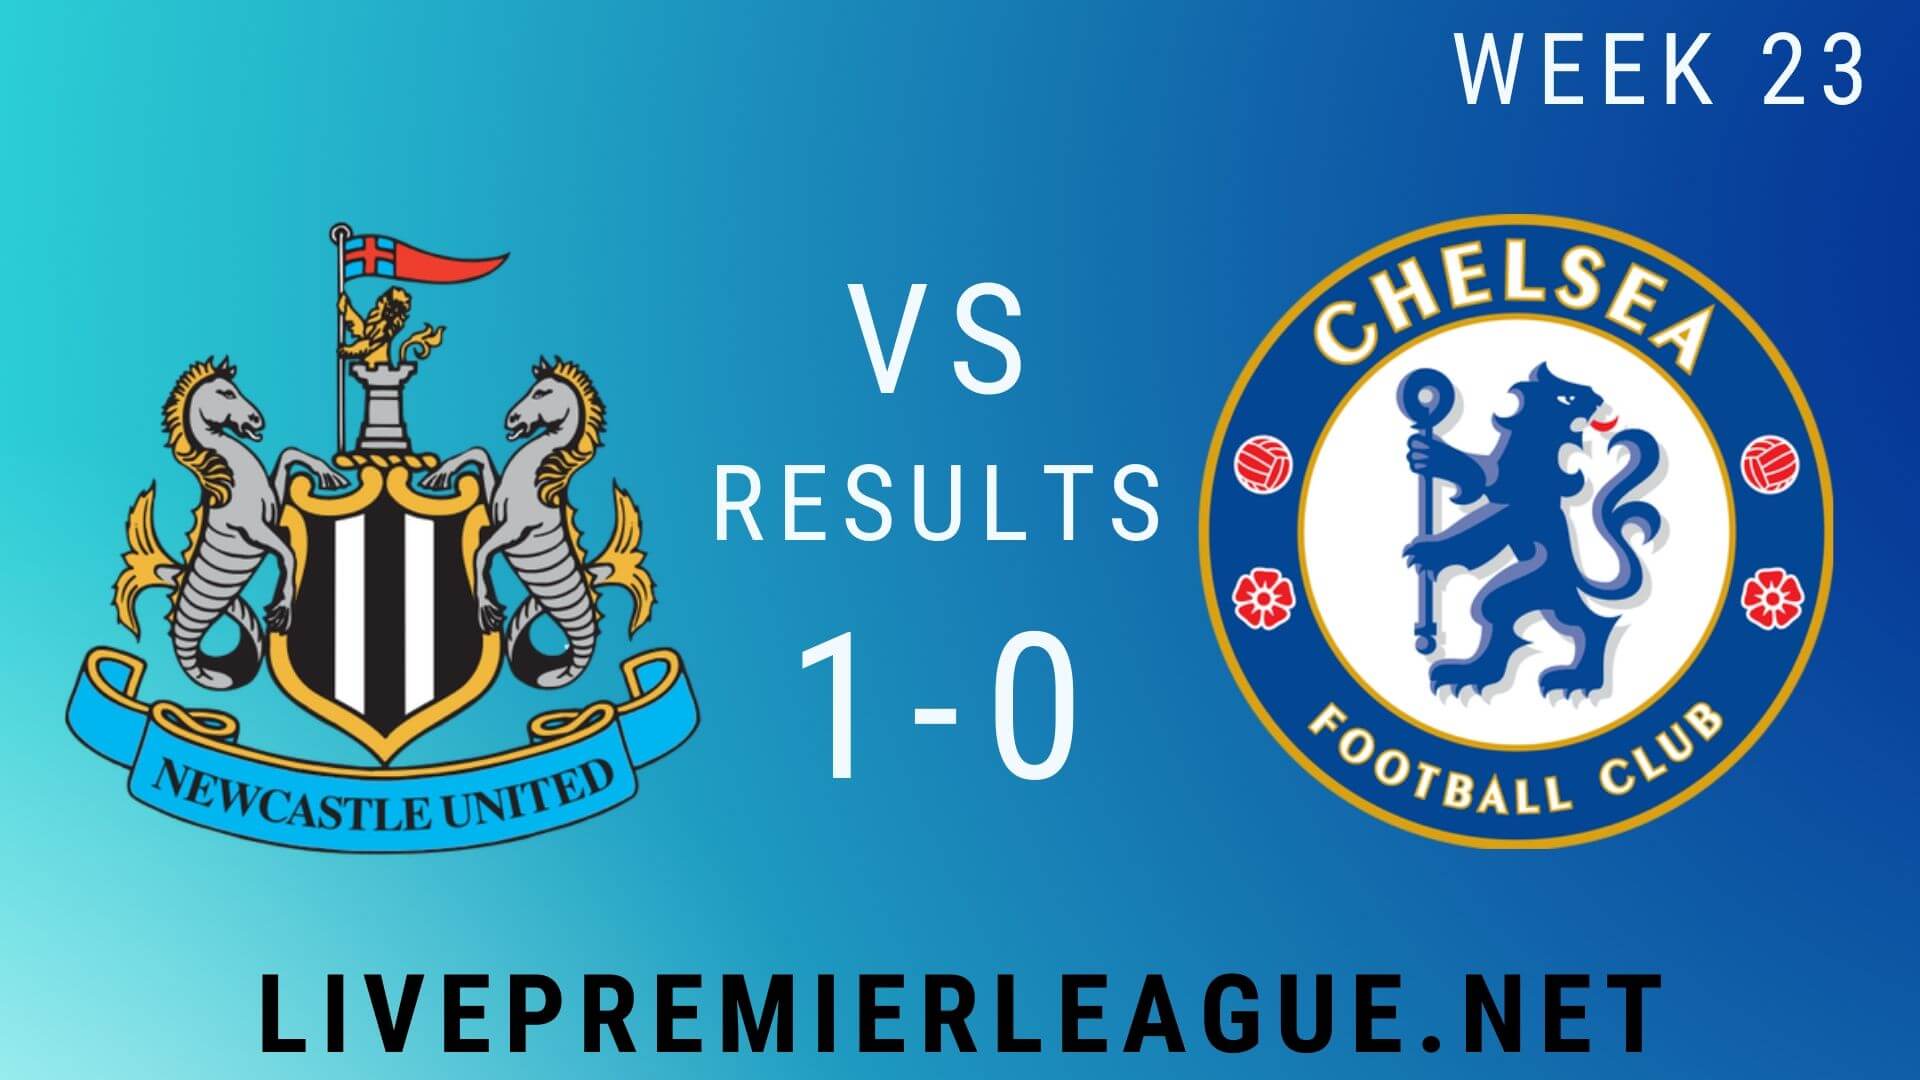 Newcastle United Vs Chelsea | Week 23 Result 2020